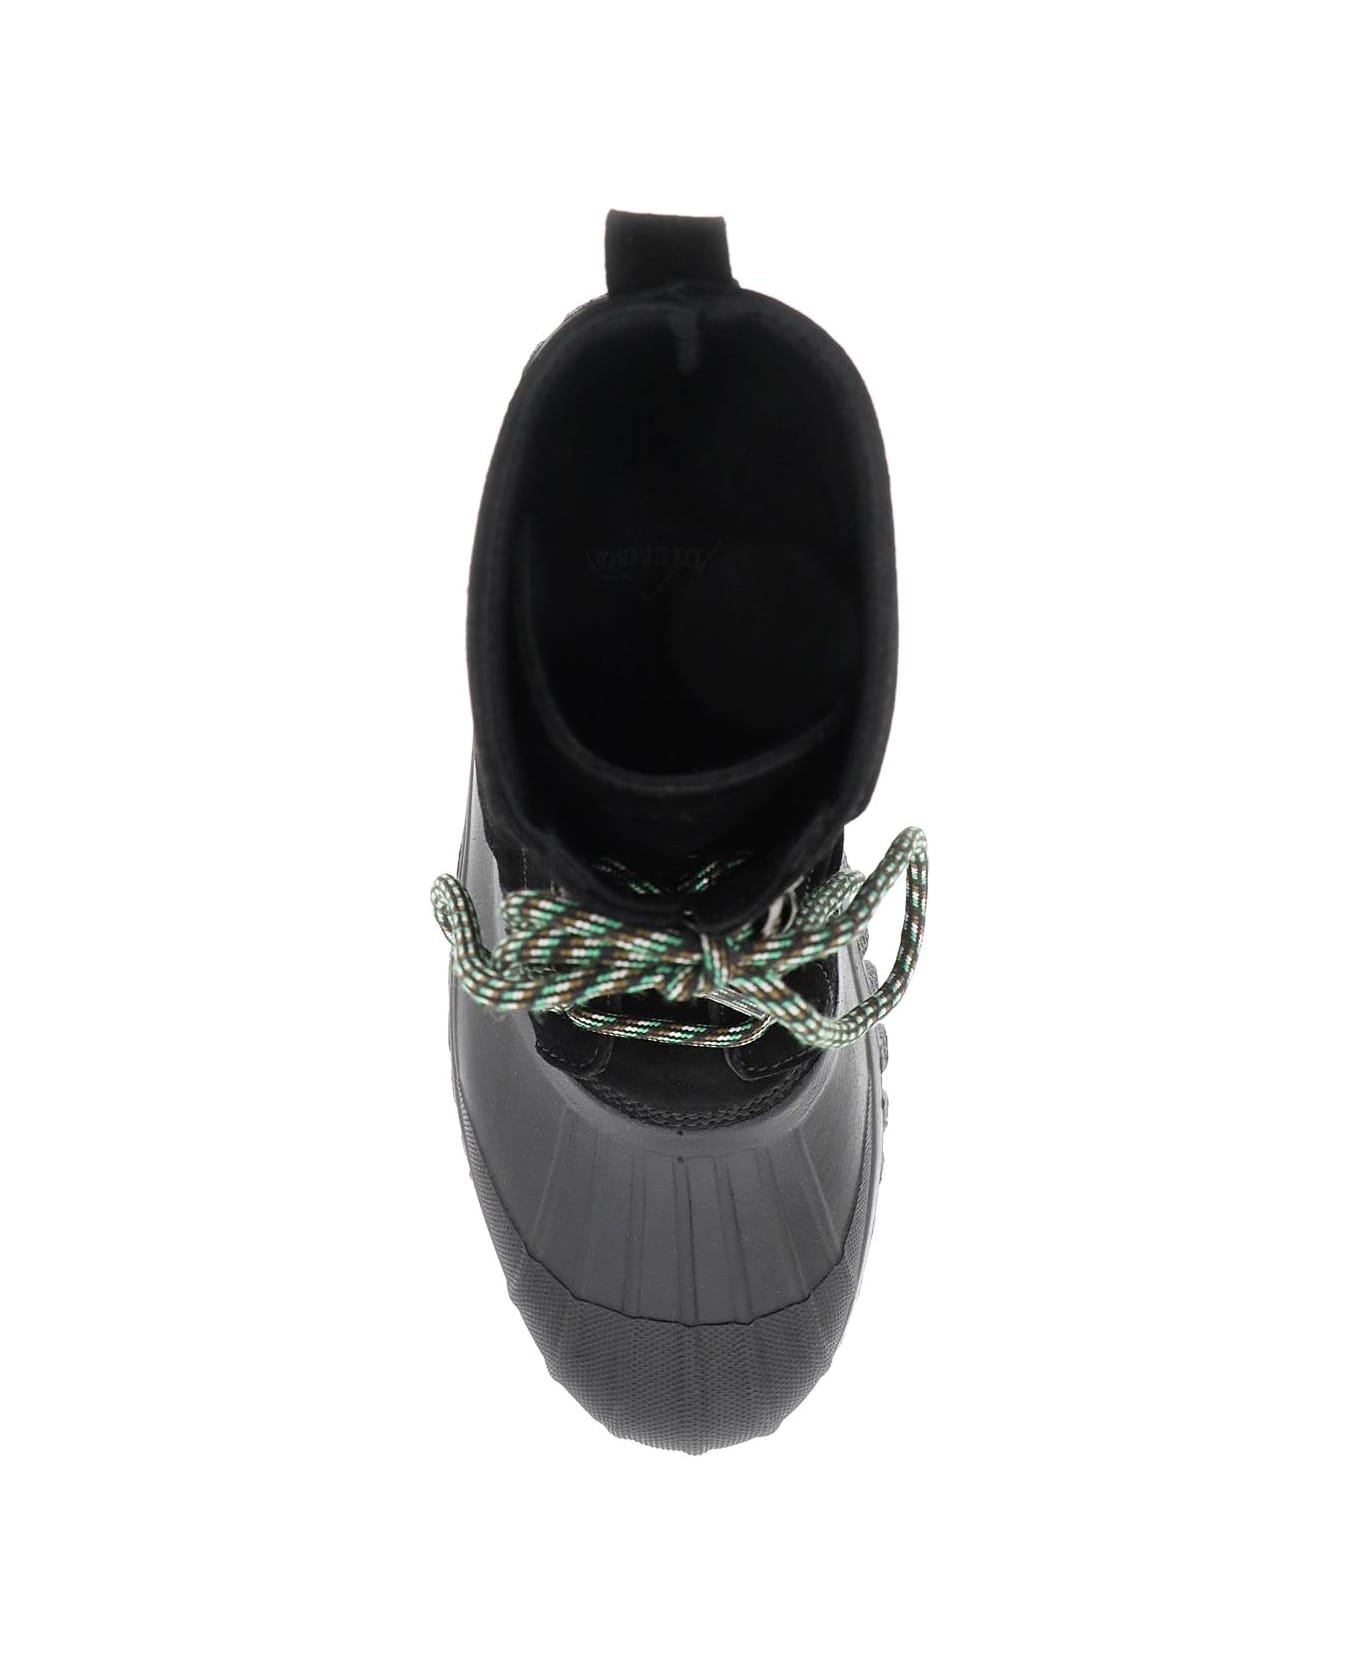 Diemme 'anatra' Lace-up Ankle Boots - BLACK (Black)